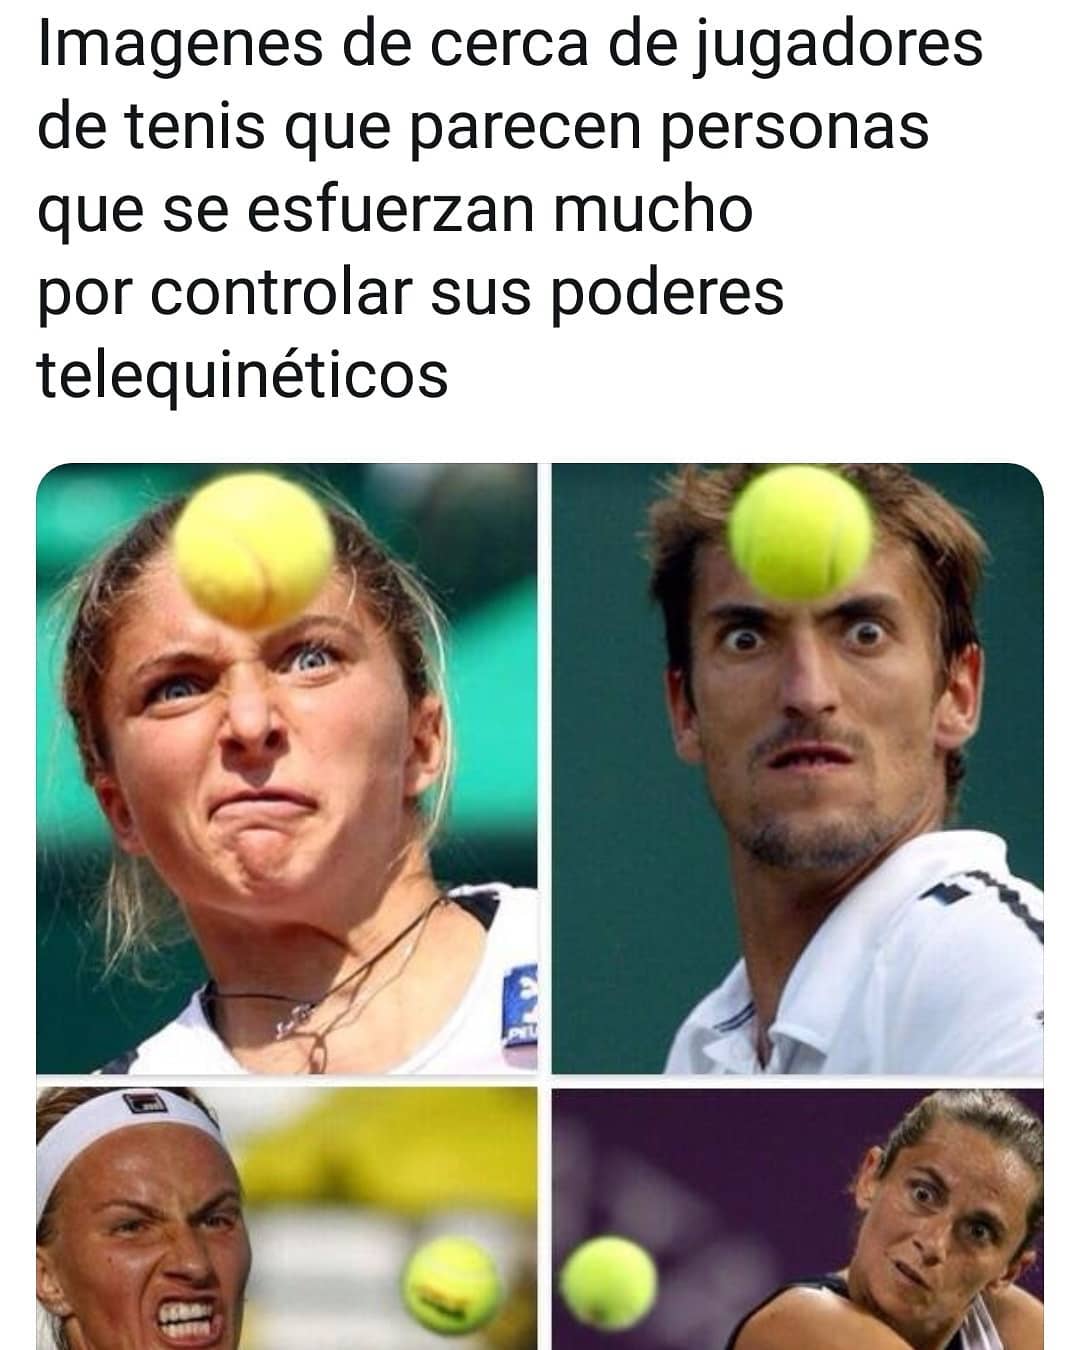 Imágenes de cerca de jugadores de tenis que parecen personas que se esfuerzan mucho por controlar sus poderes telequinéticos.